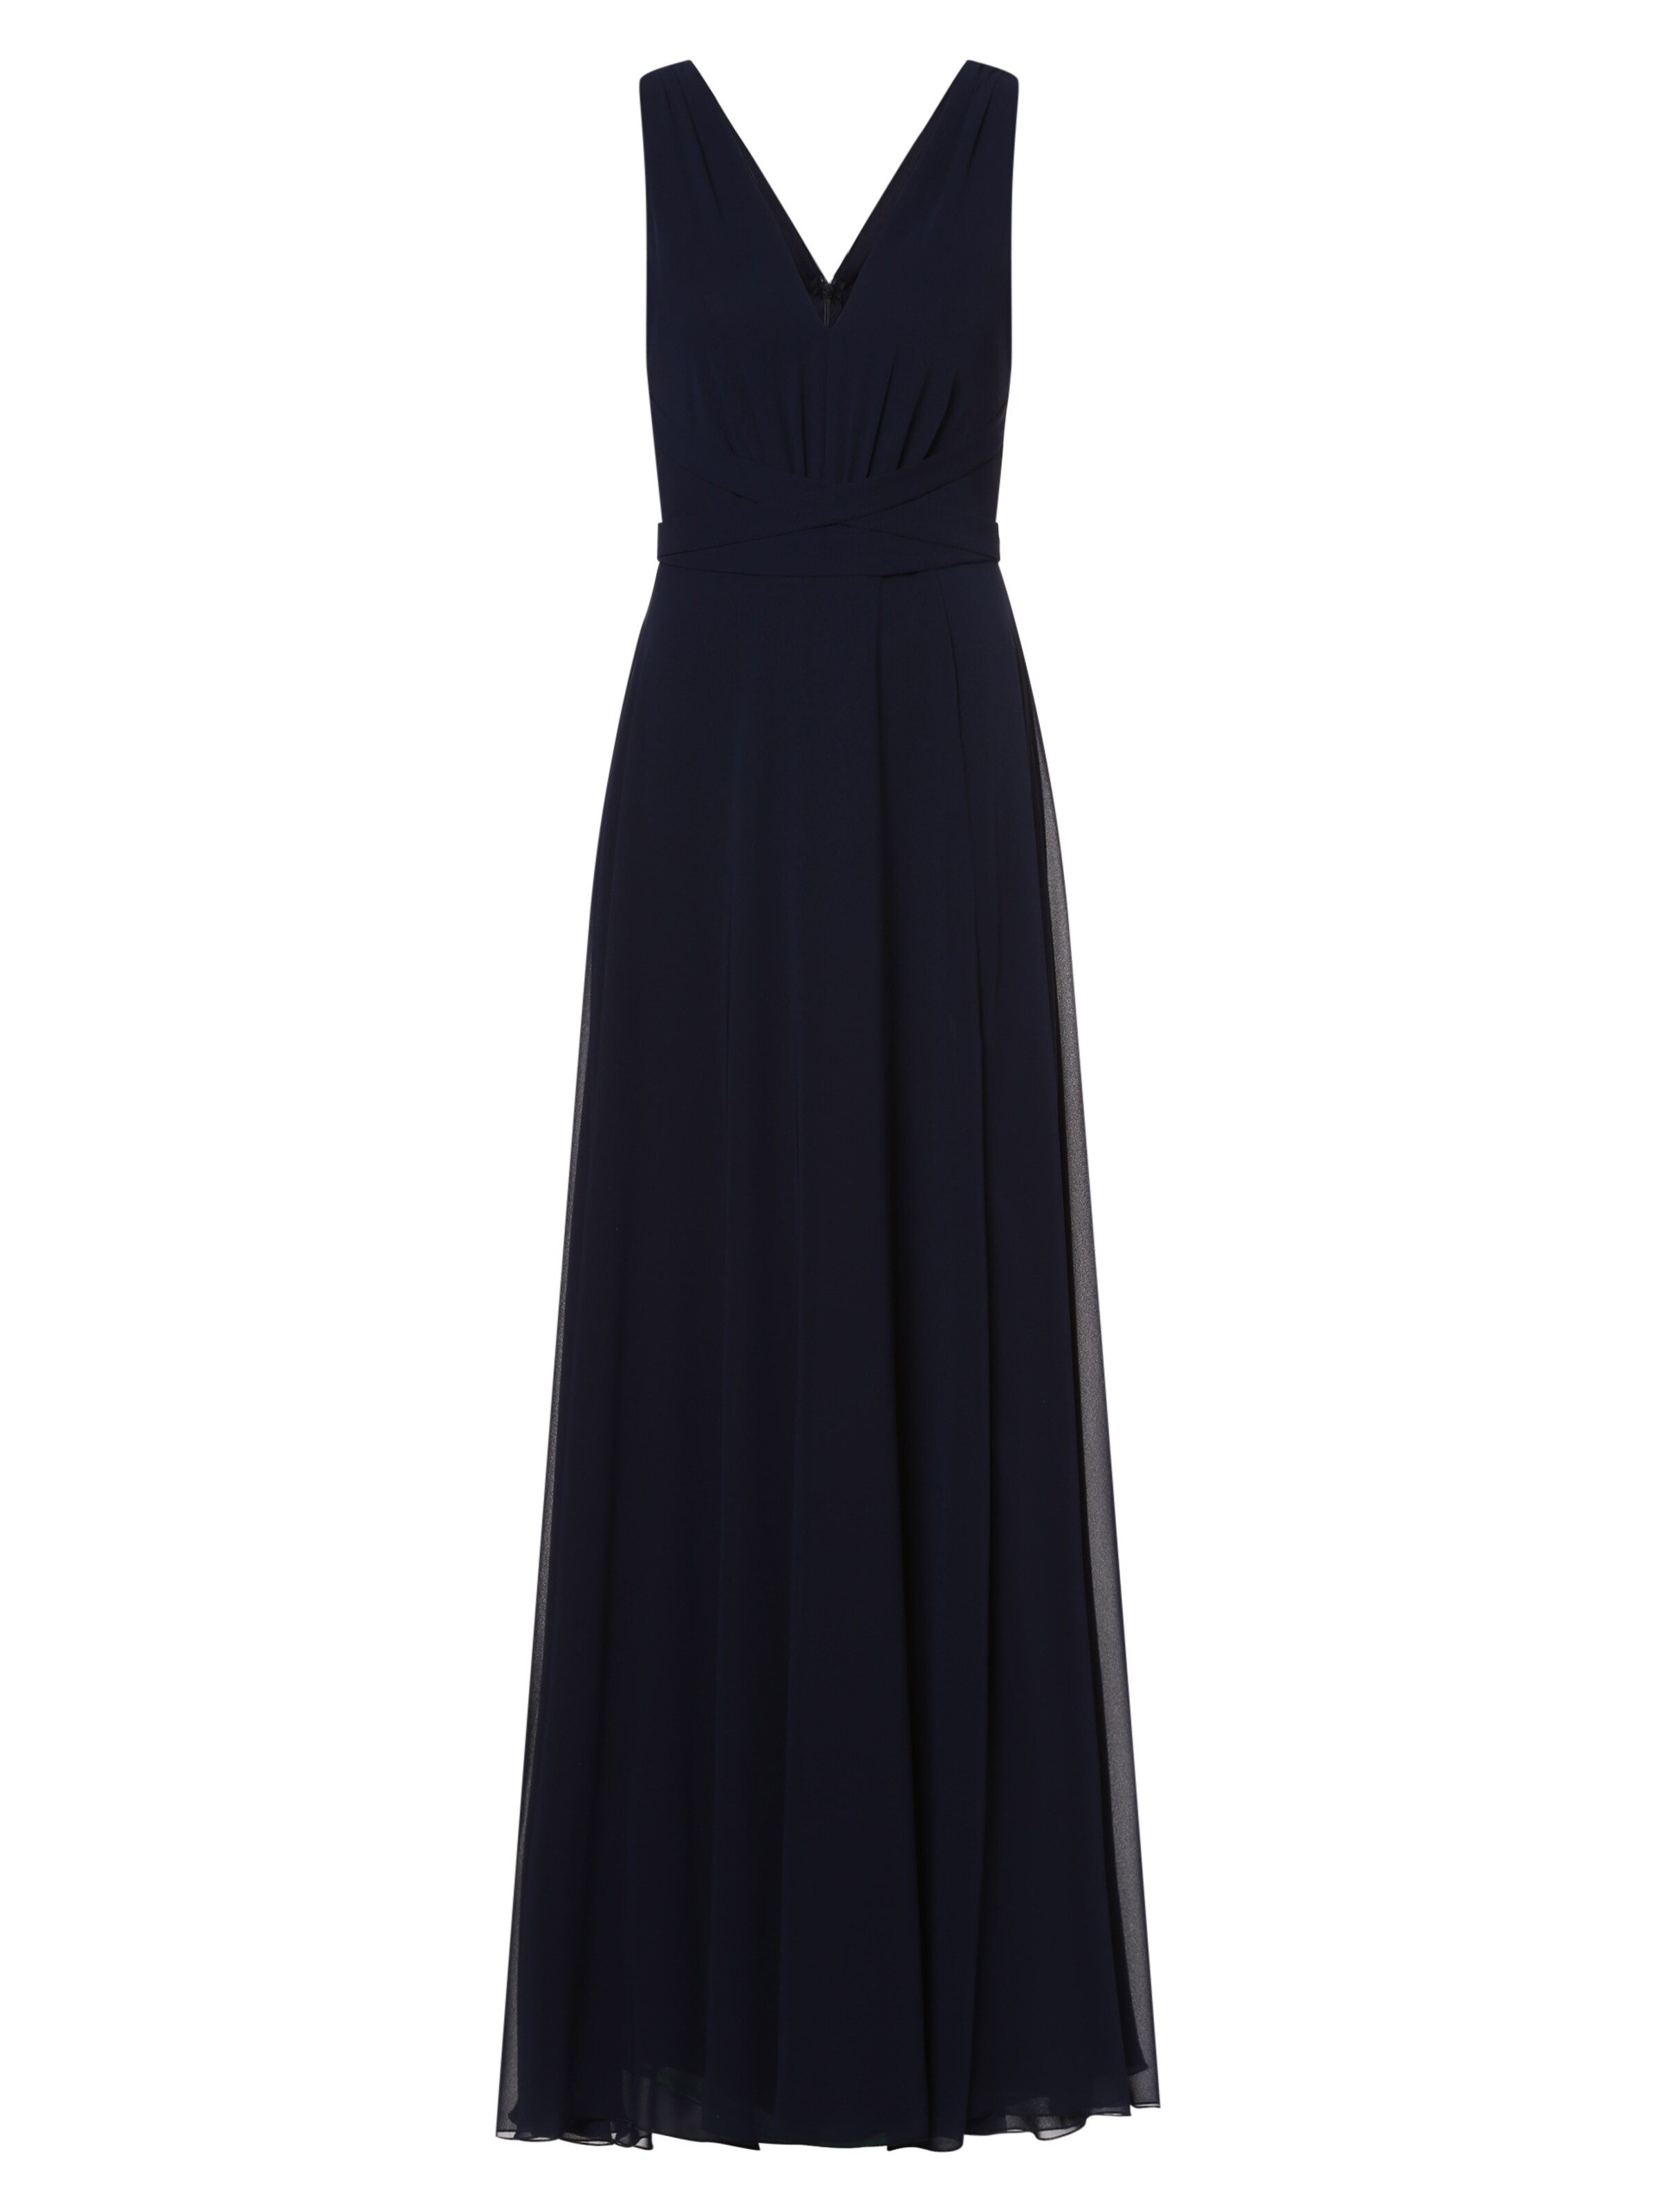 Vintage schwarzes Kleid von Marie Lund Damen Kleidung Kleider Für besondere Anlässe Abendkleider Vintage Abendkleider 